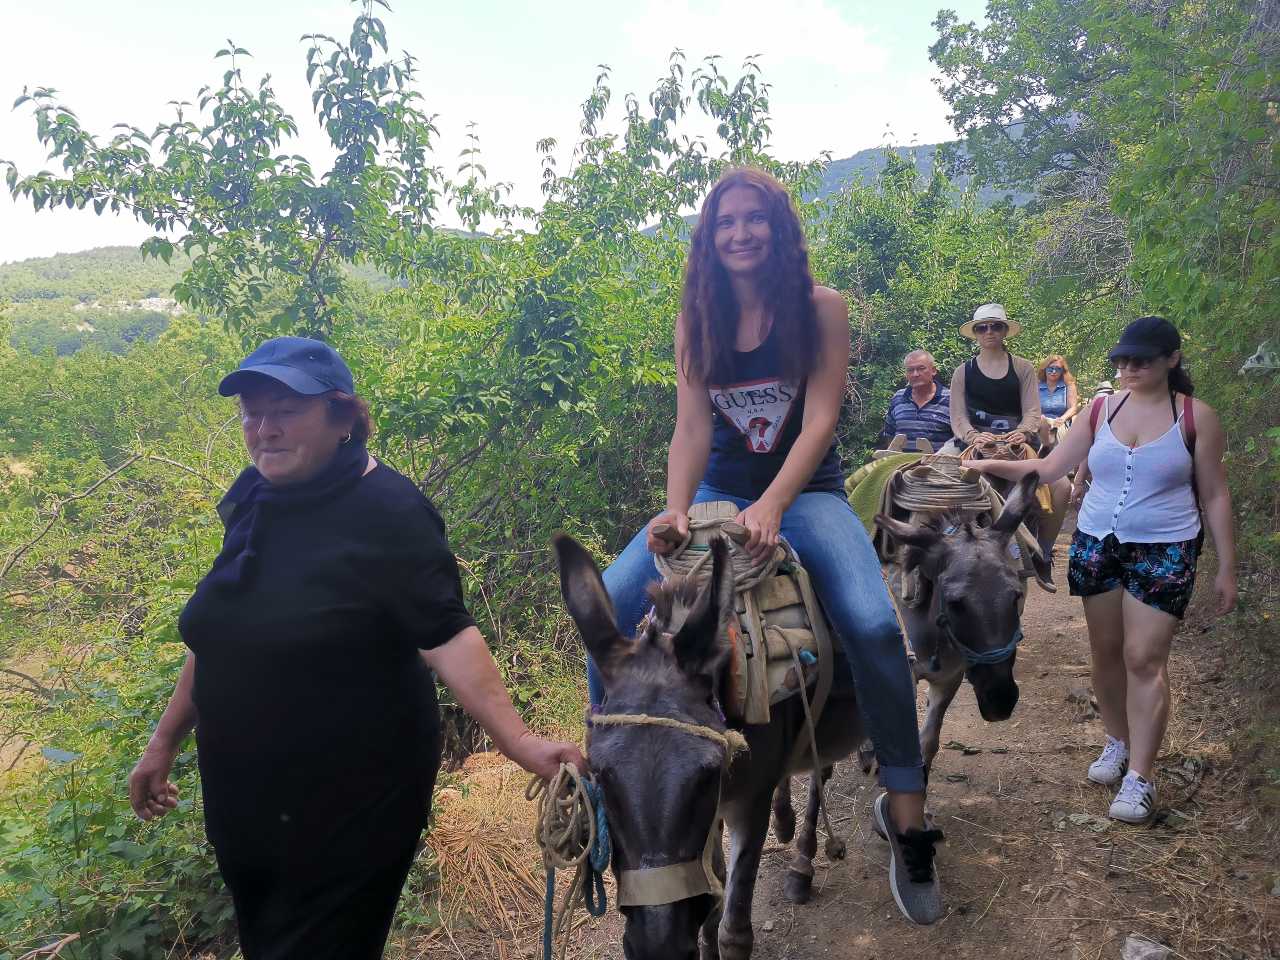 Wandeling door Galicica met ezels